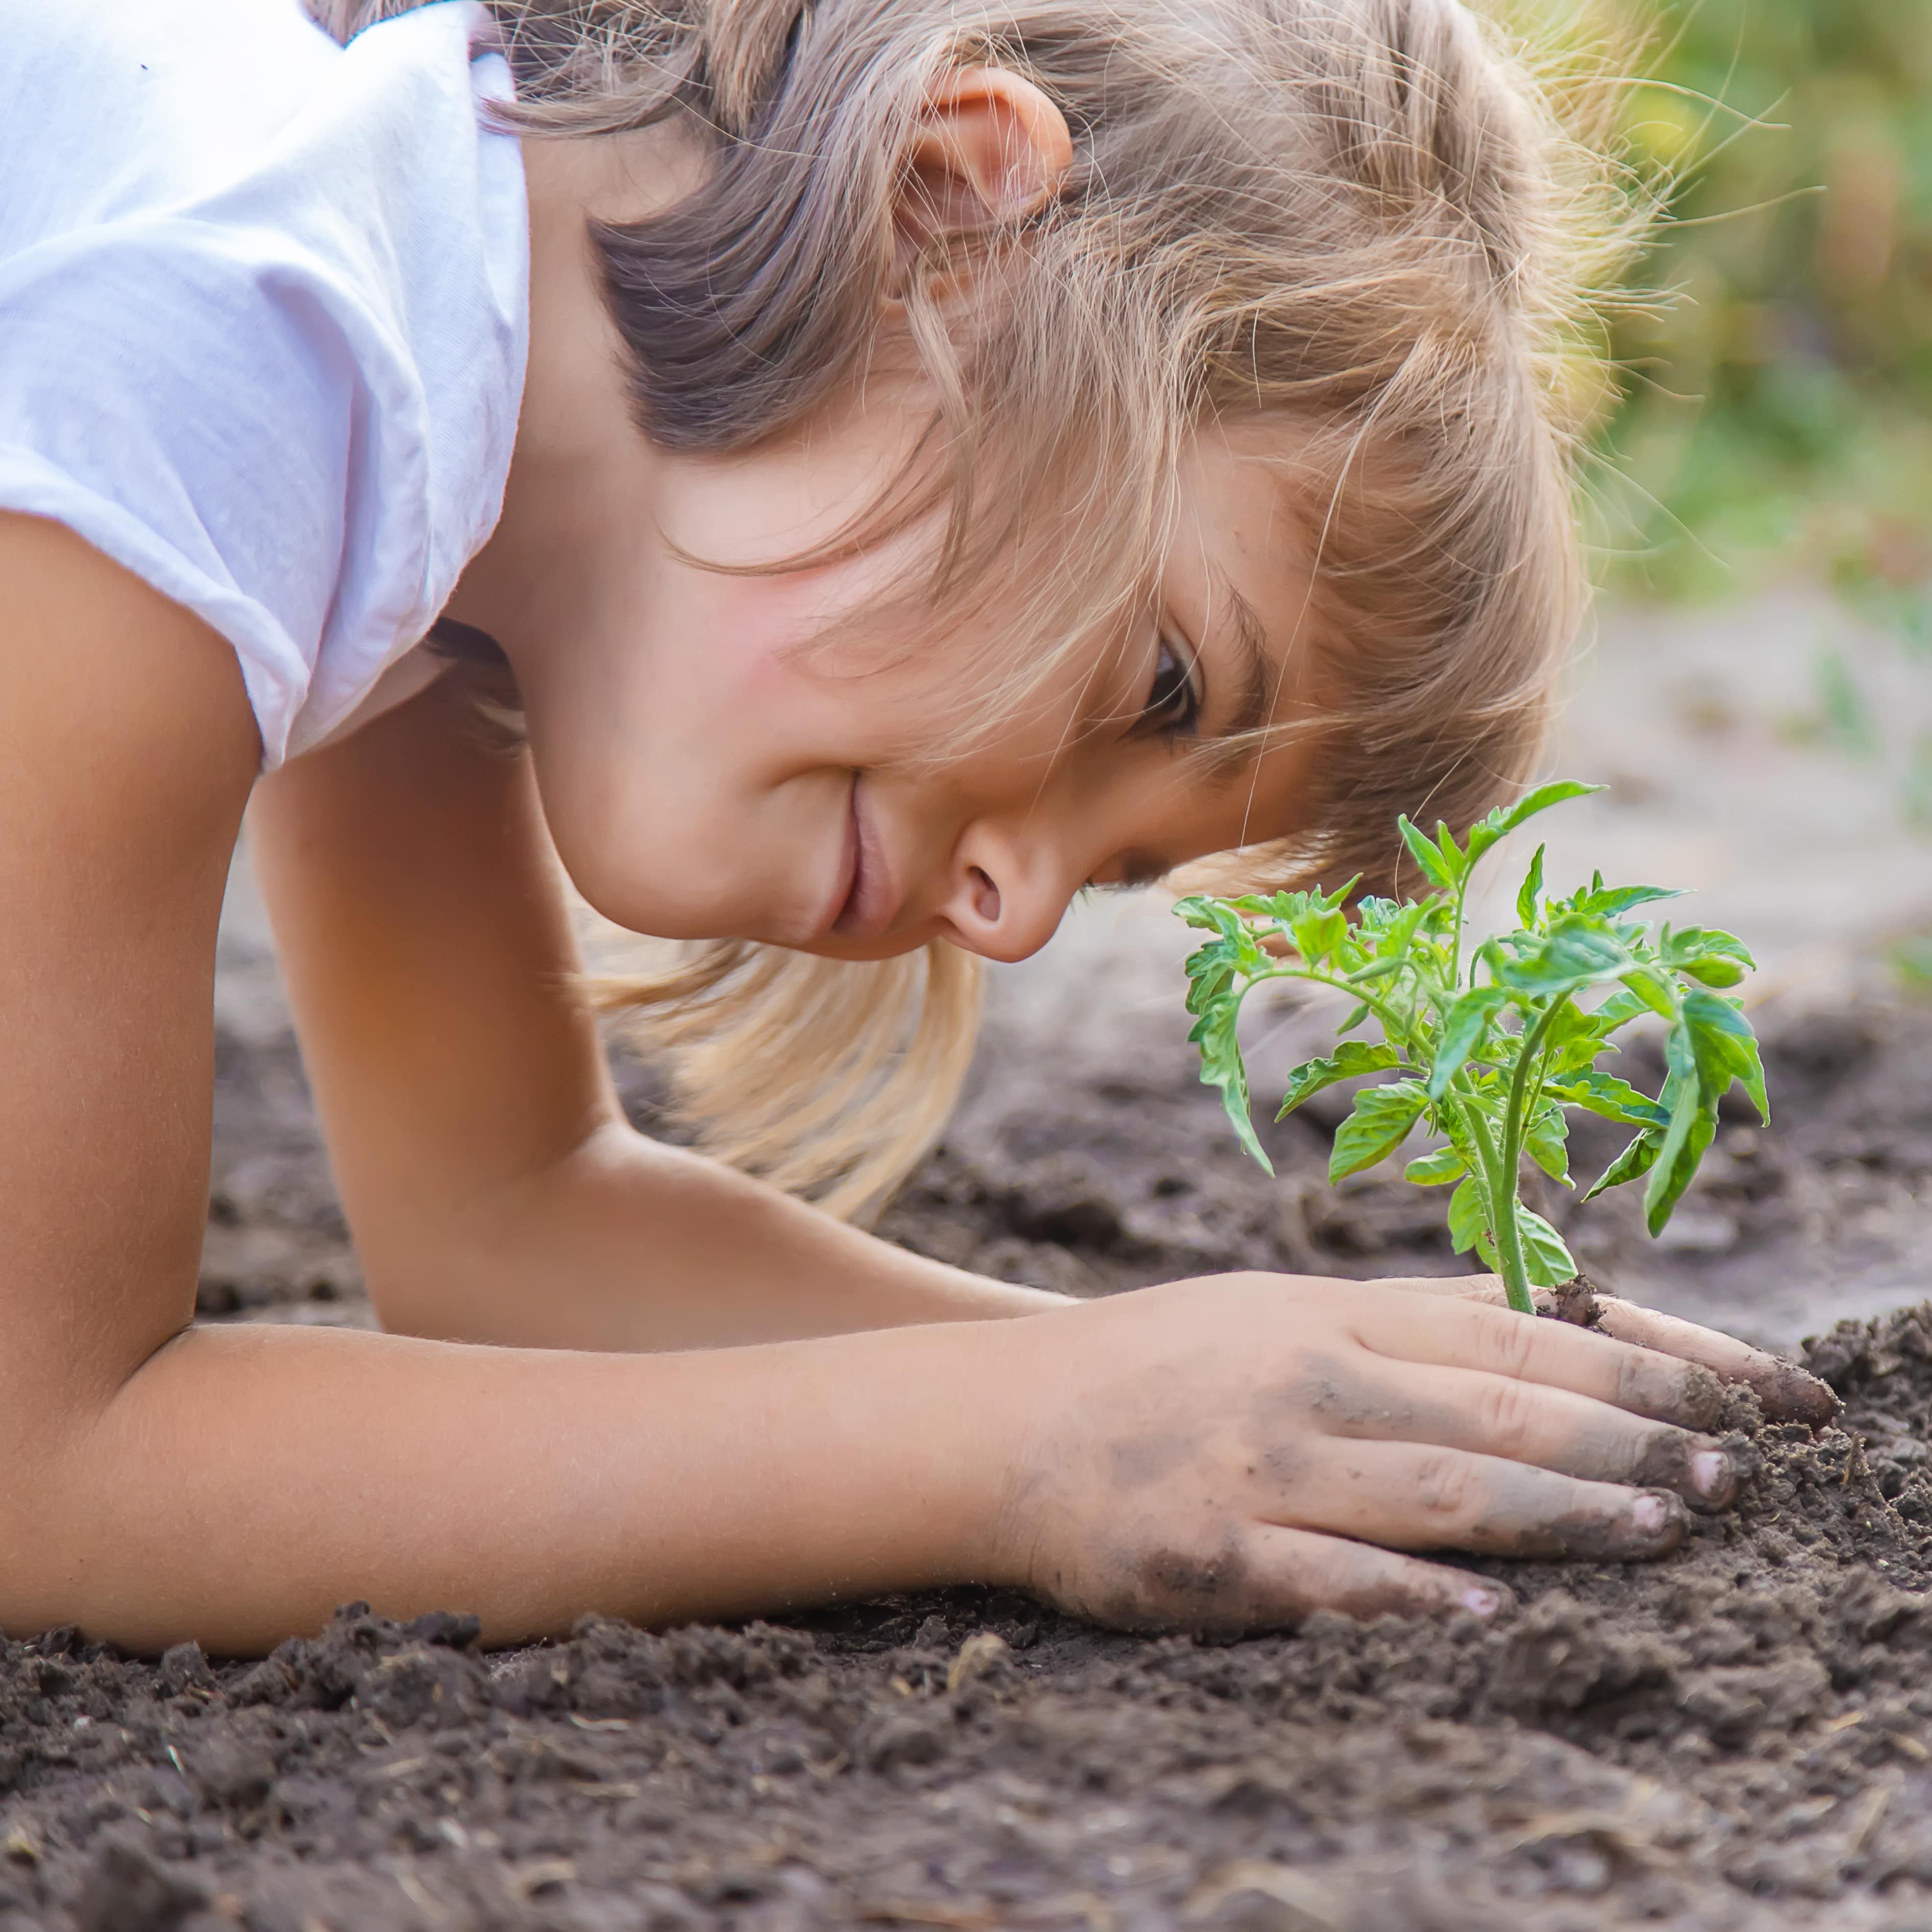 Nahaufnahme: Ein Mädchen hockt auf dem Boden und pflanzt eine grüne Pflanze.